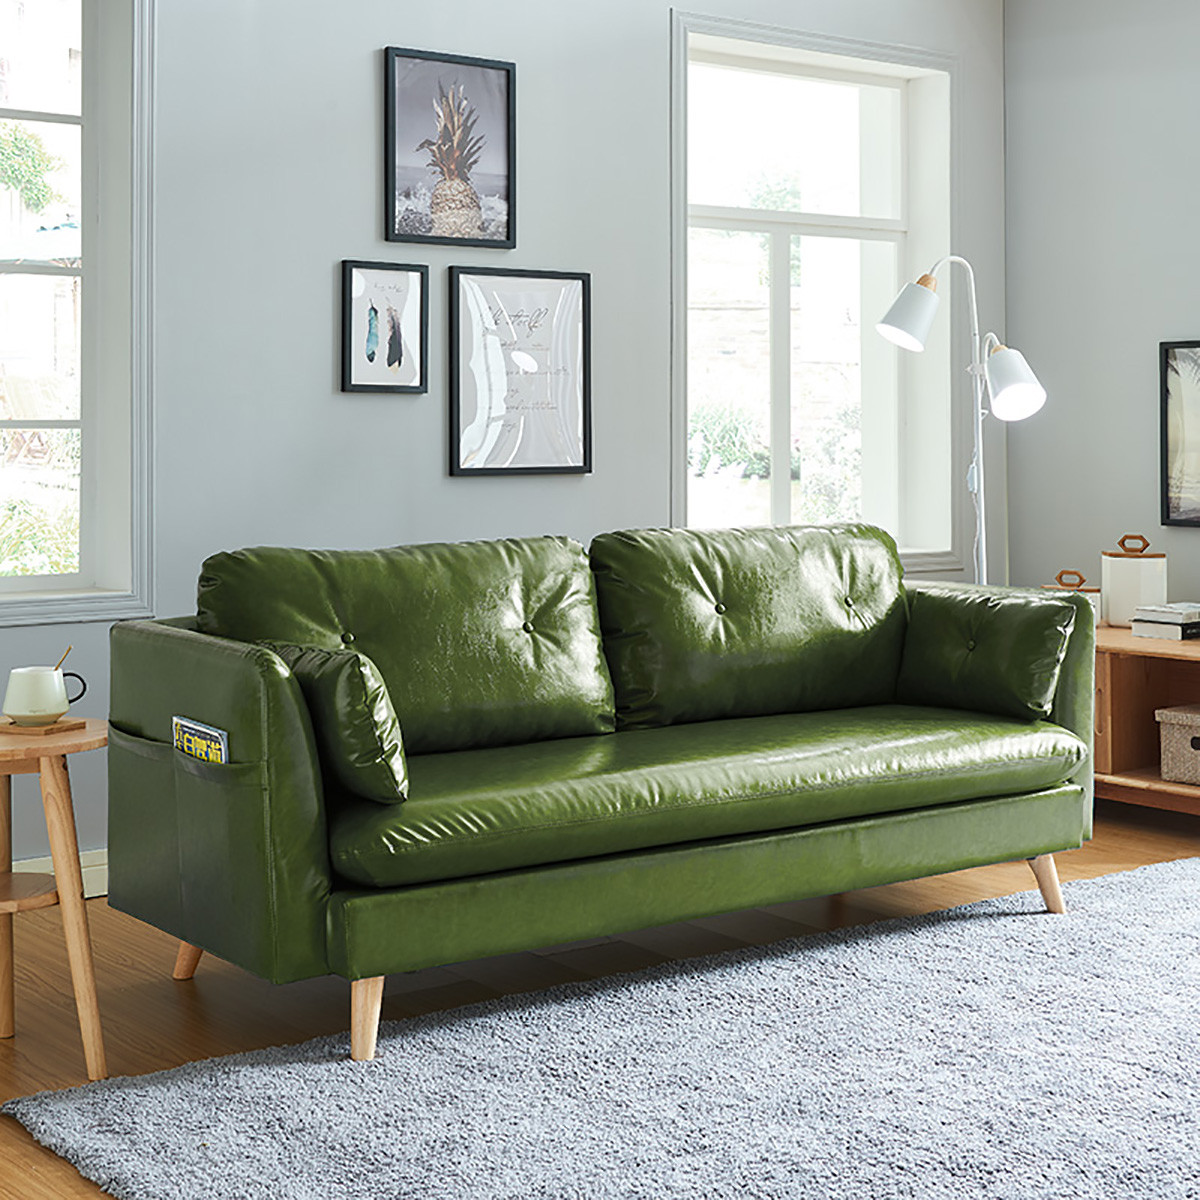 客厅整装双人现代简约办公室皮艺沙发组合color墨绿色(拉扣款)